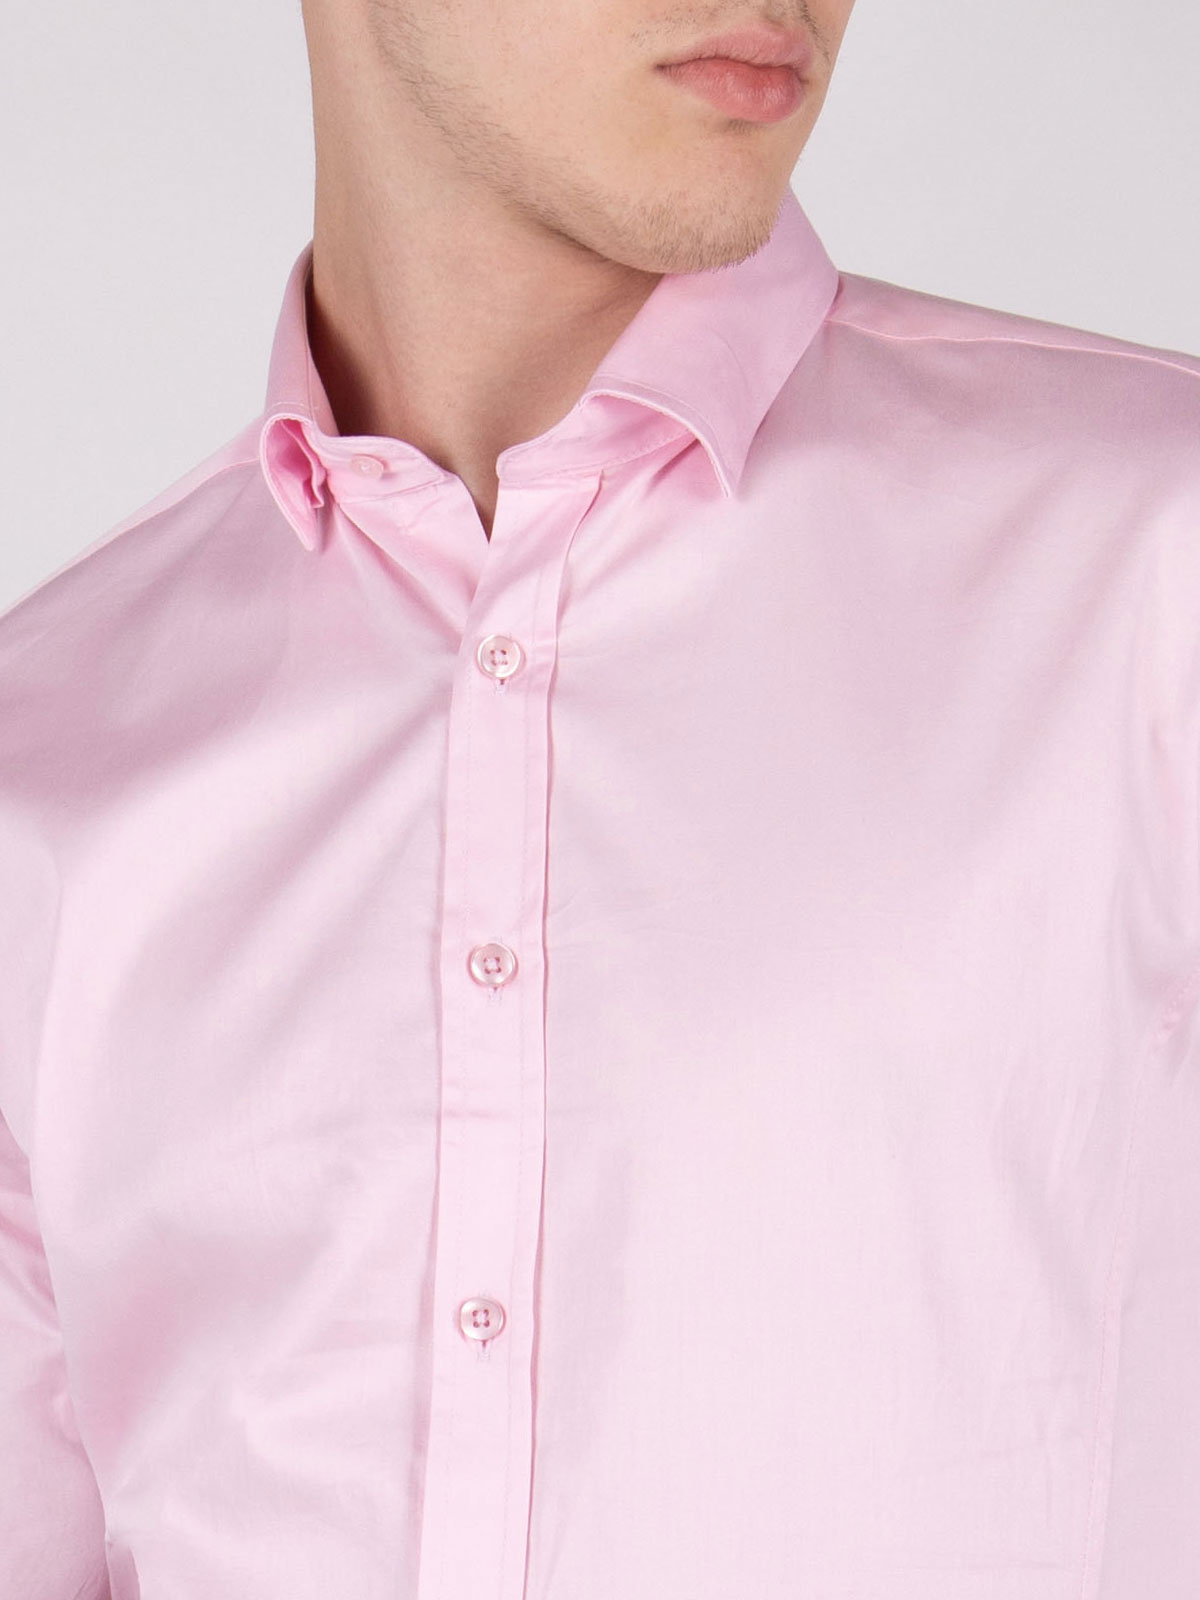 Класическа светло розова риза - 21470 69.00 лв img3